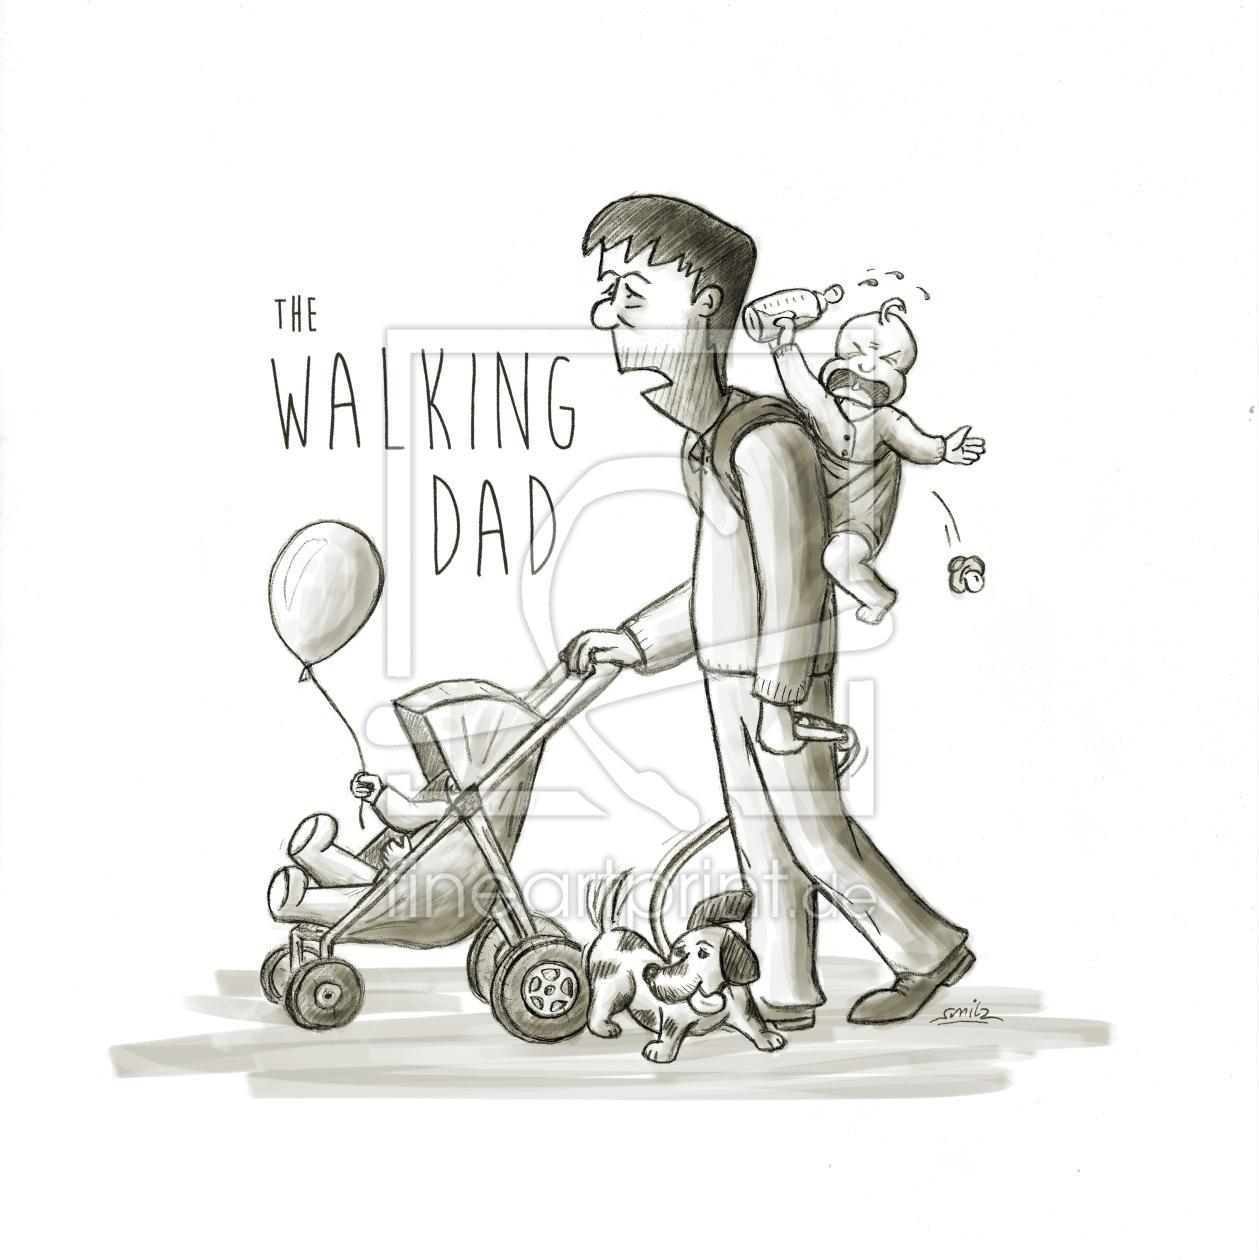 Bild-Nr.: 11815344 the walking dad erstellt von passauposter